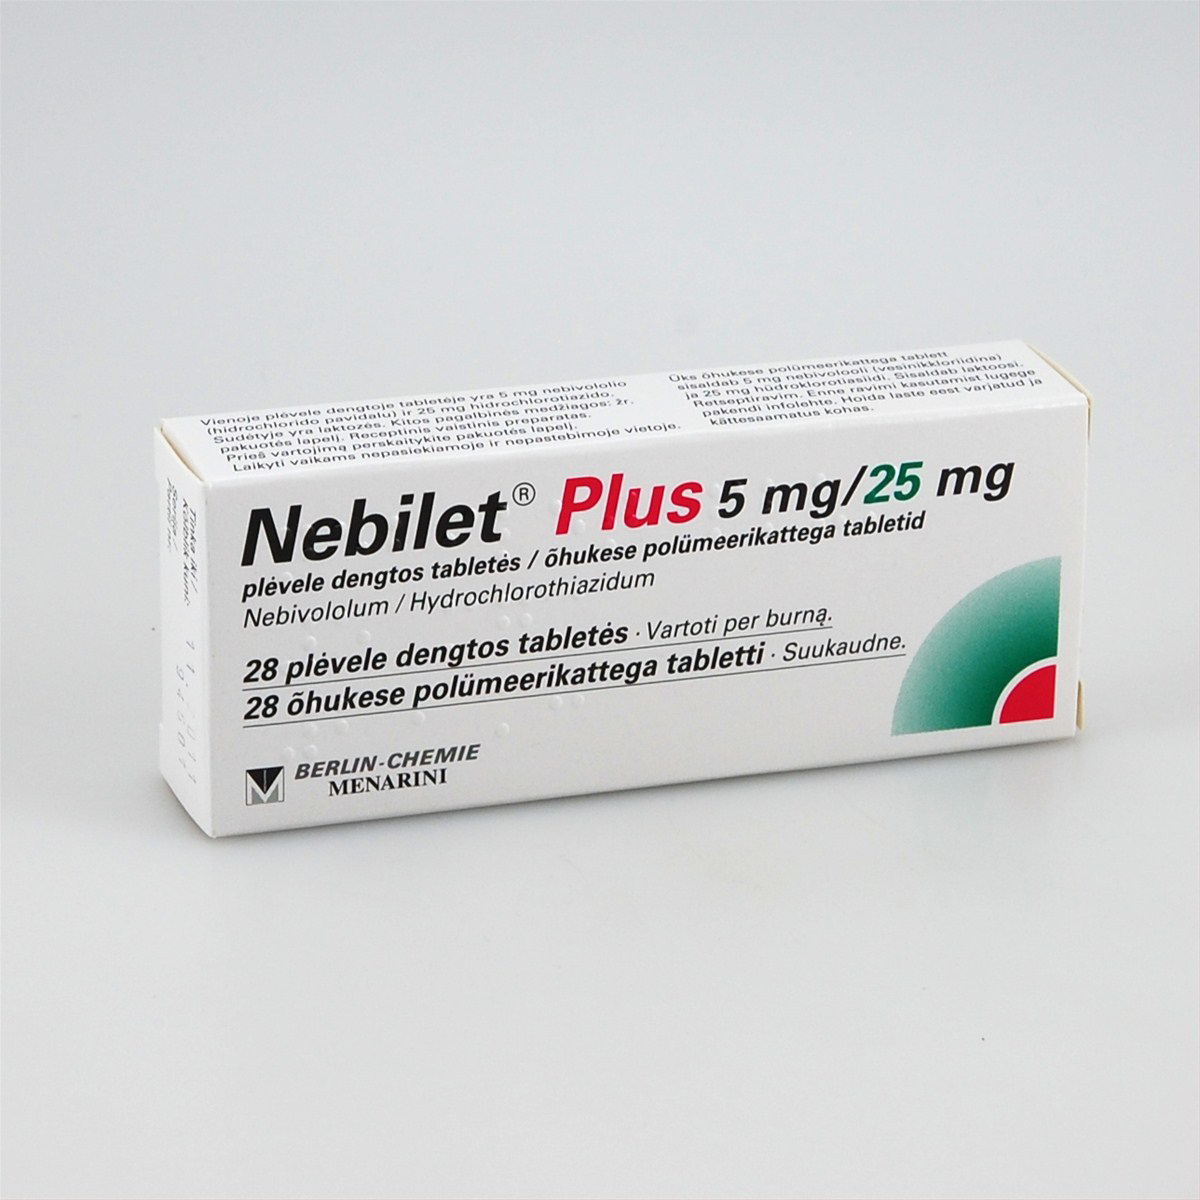 Таблетки небилет отзывы. Небилет 5 мг. Небилет 2.5 мг. Небилет плюс. Небилет 28 т Германия 5 мг.